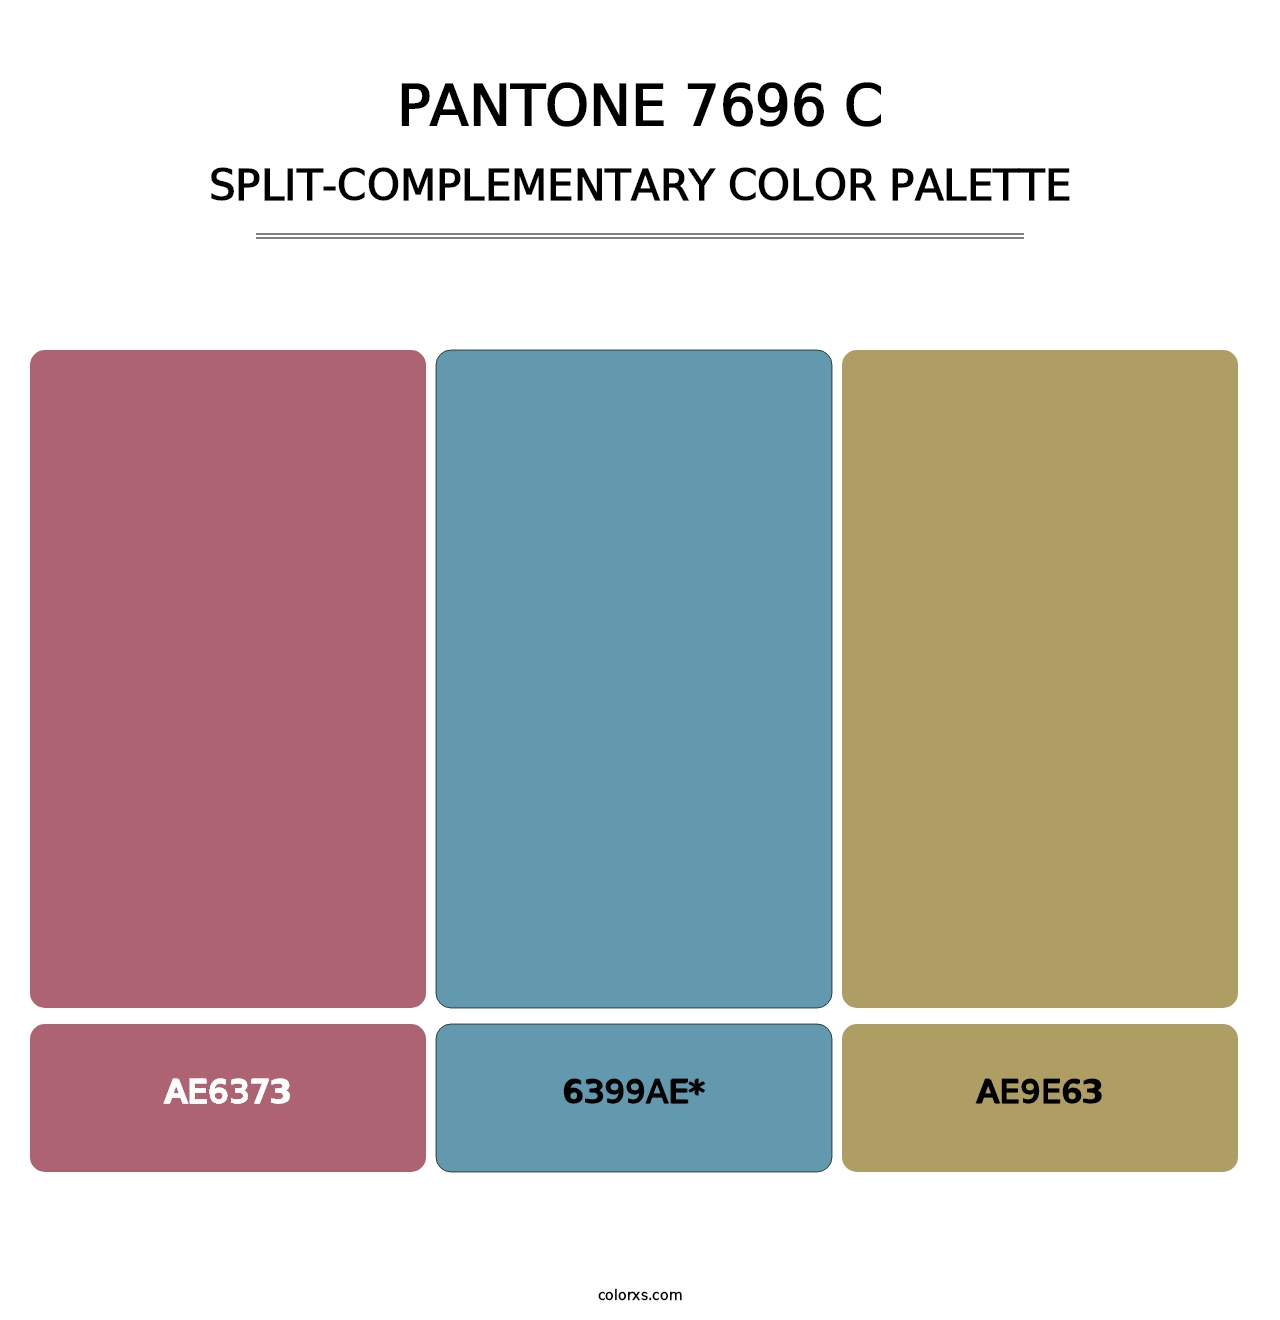 PANTONE 7696 C - Split-Complementary Color Palette